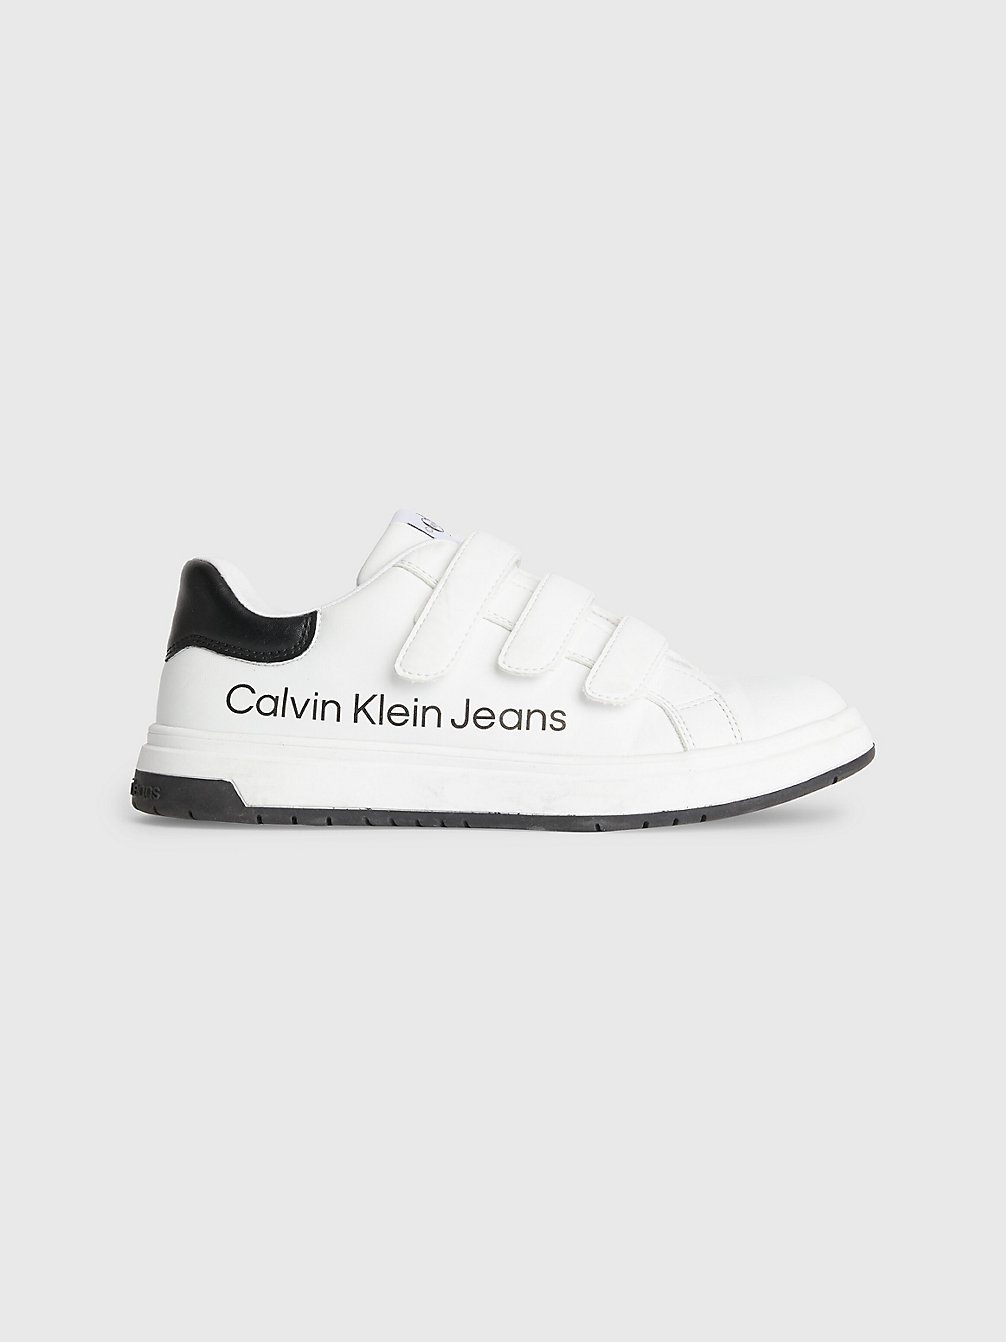 WHITE BLACK > Recycelte Sneakers Für Kinder > undefined kids unisex - Calvin Klein